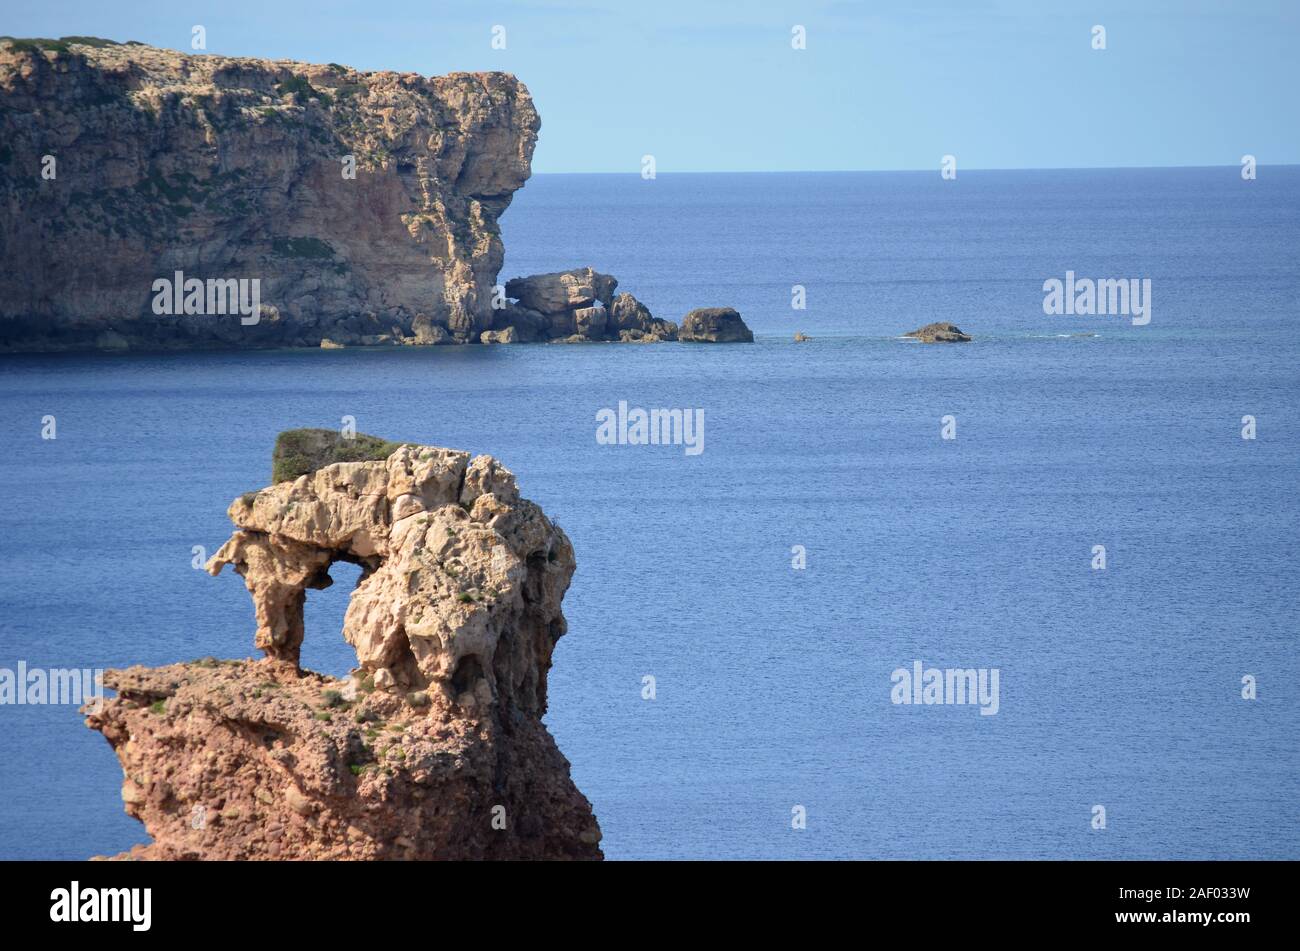 Rock-shaped elephant on the coast of Menorca. Cala Morell. Balearics.Spain Stock Photo